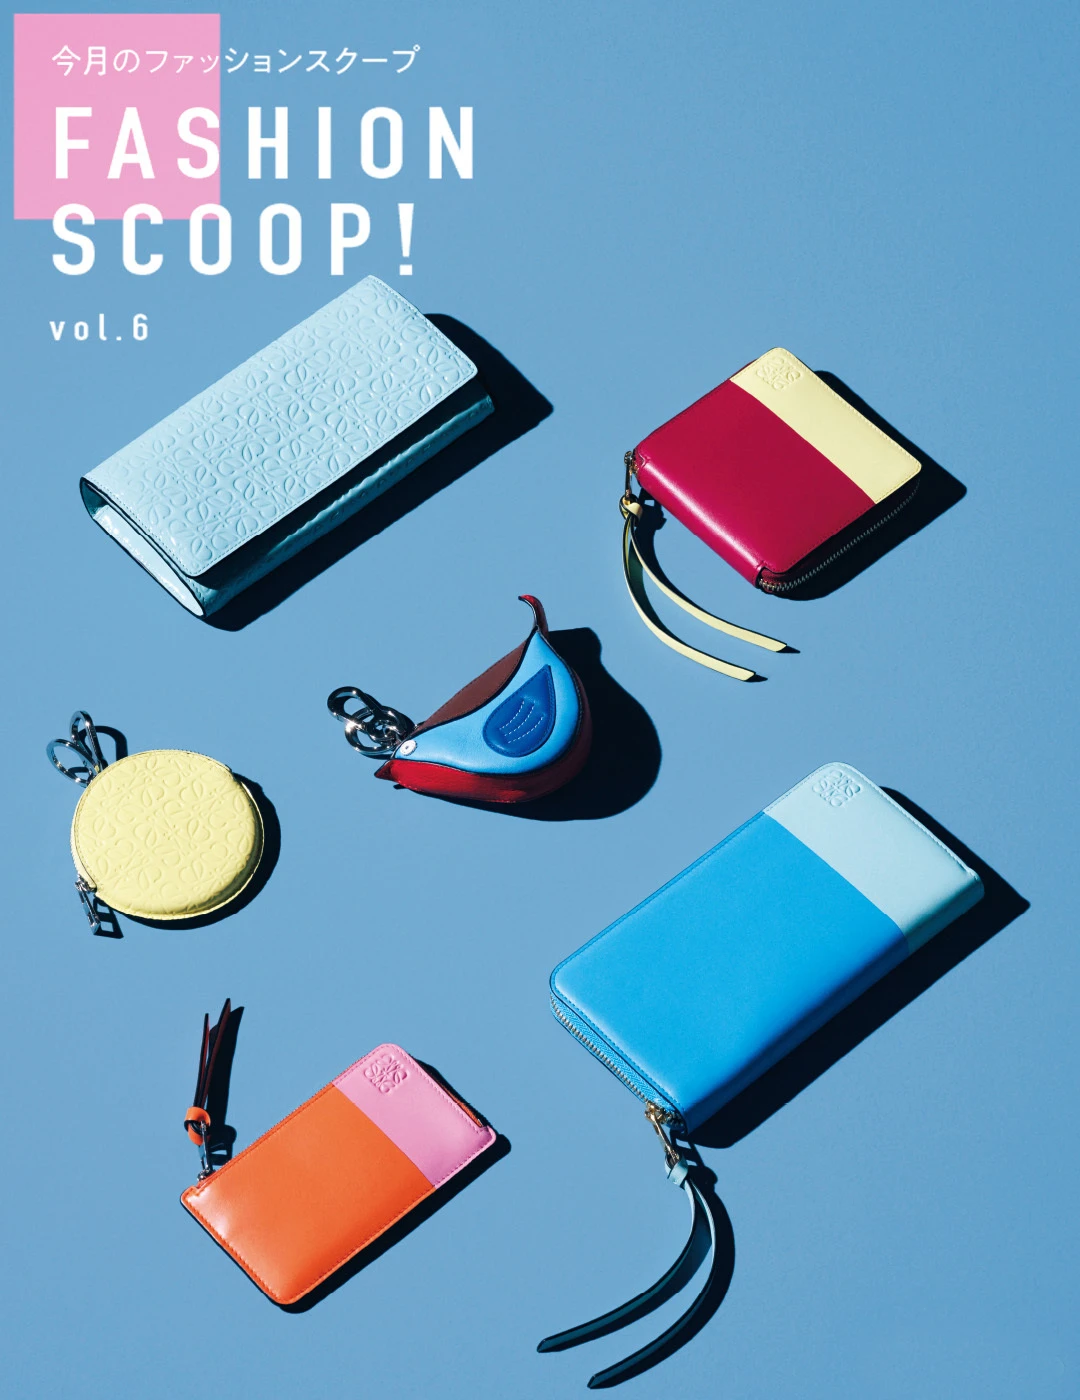 今月のファッションスクープ FASHION SCOOP! vol.6